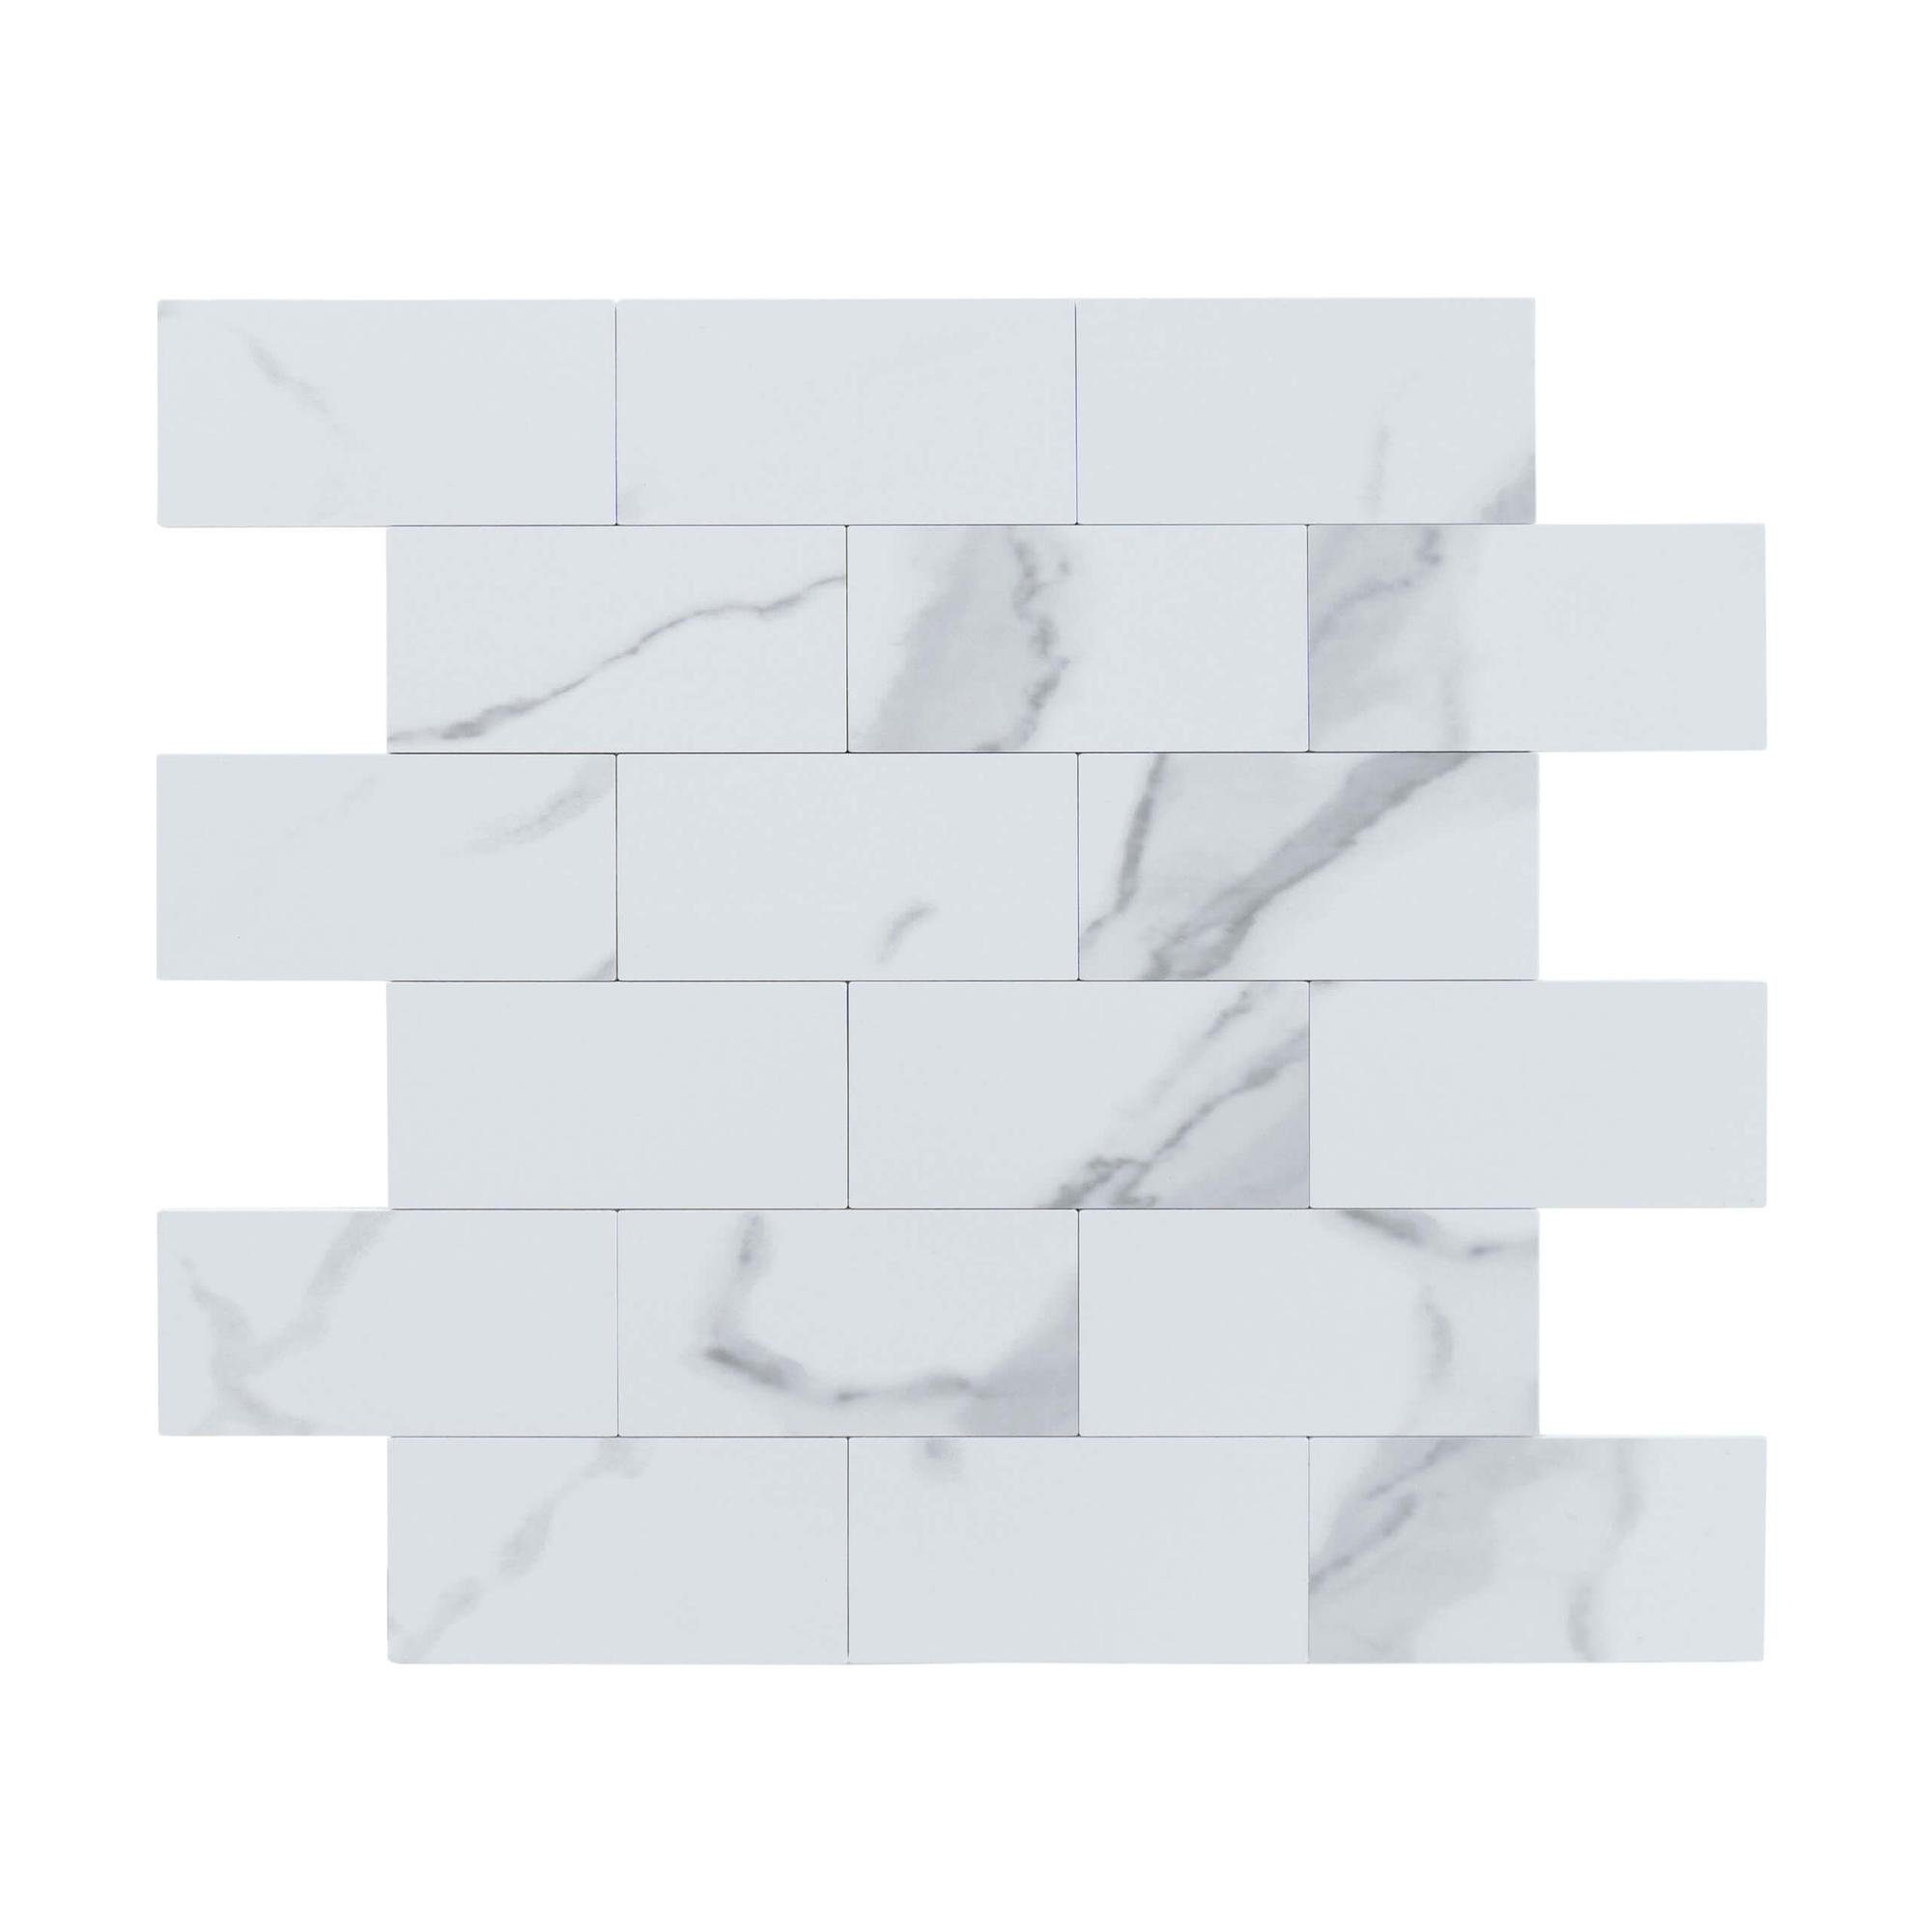 Dalsys Wandpaneel 1m² 11 Stück selbstklebend, (Weiß Marmoroptik Steinoptik, 11-tlg., Wandfliese) feuchtigskeitsbeständig, einfach montiert, hochwertiges Material